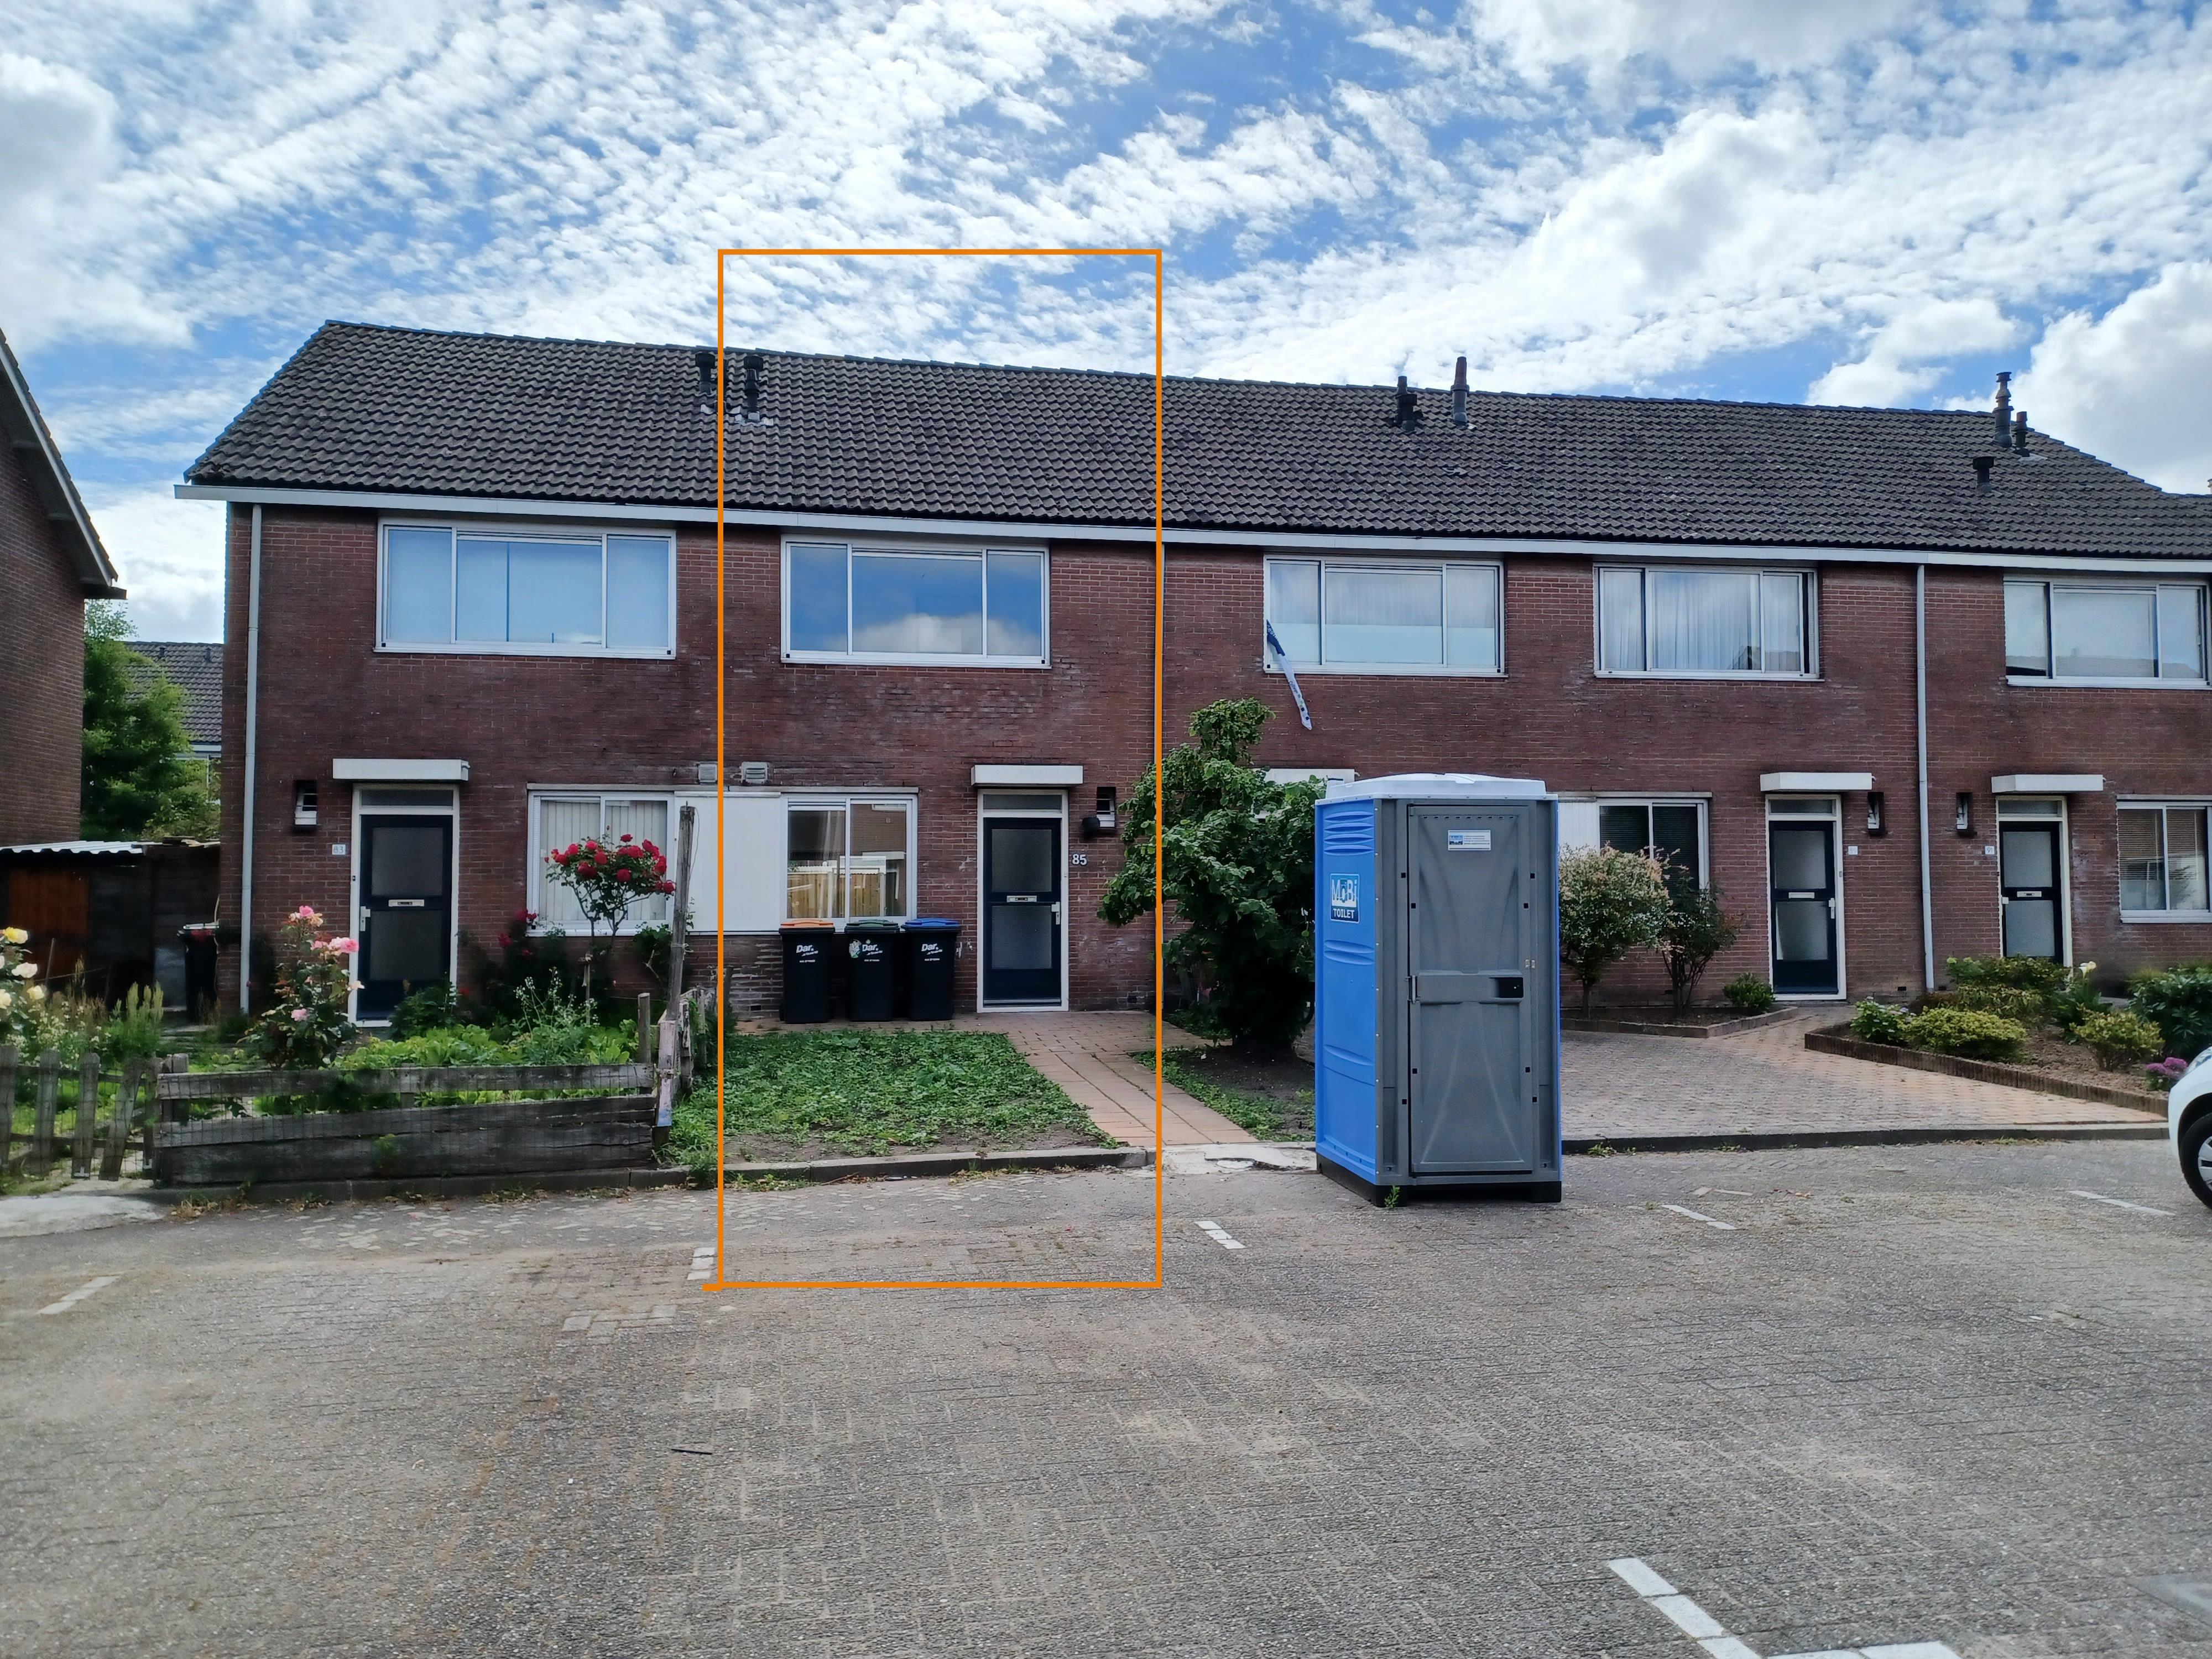 Middelveld 85, 6651 GS Druten, Nederland